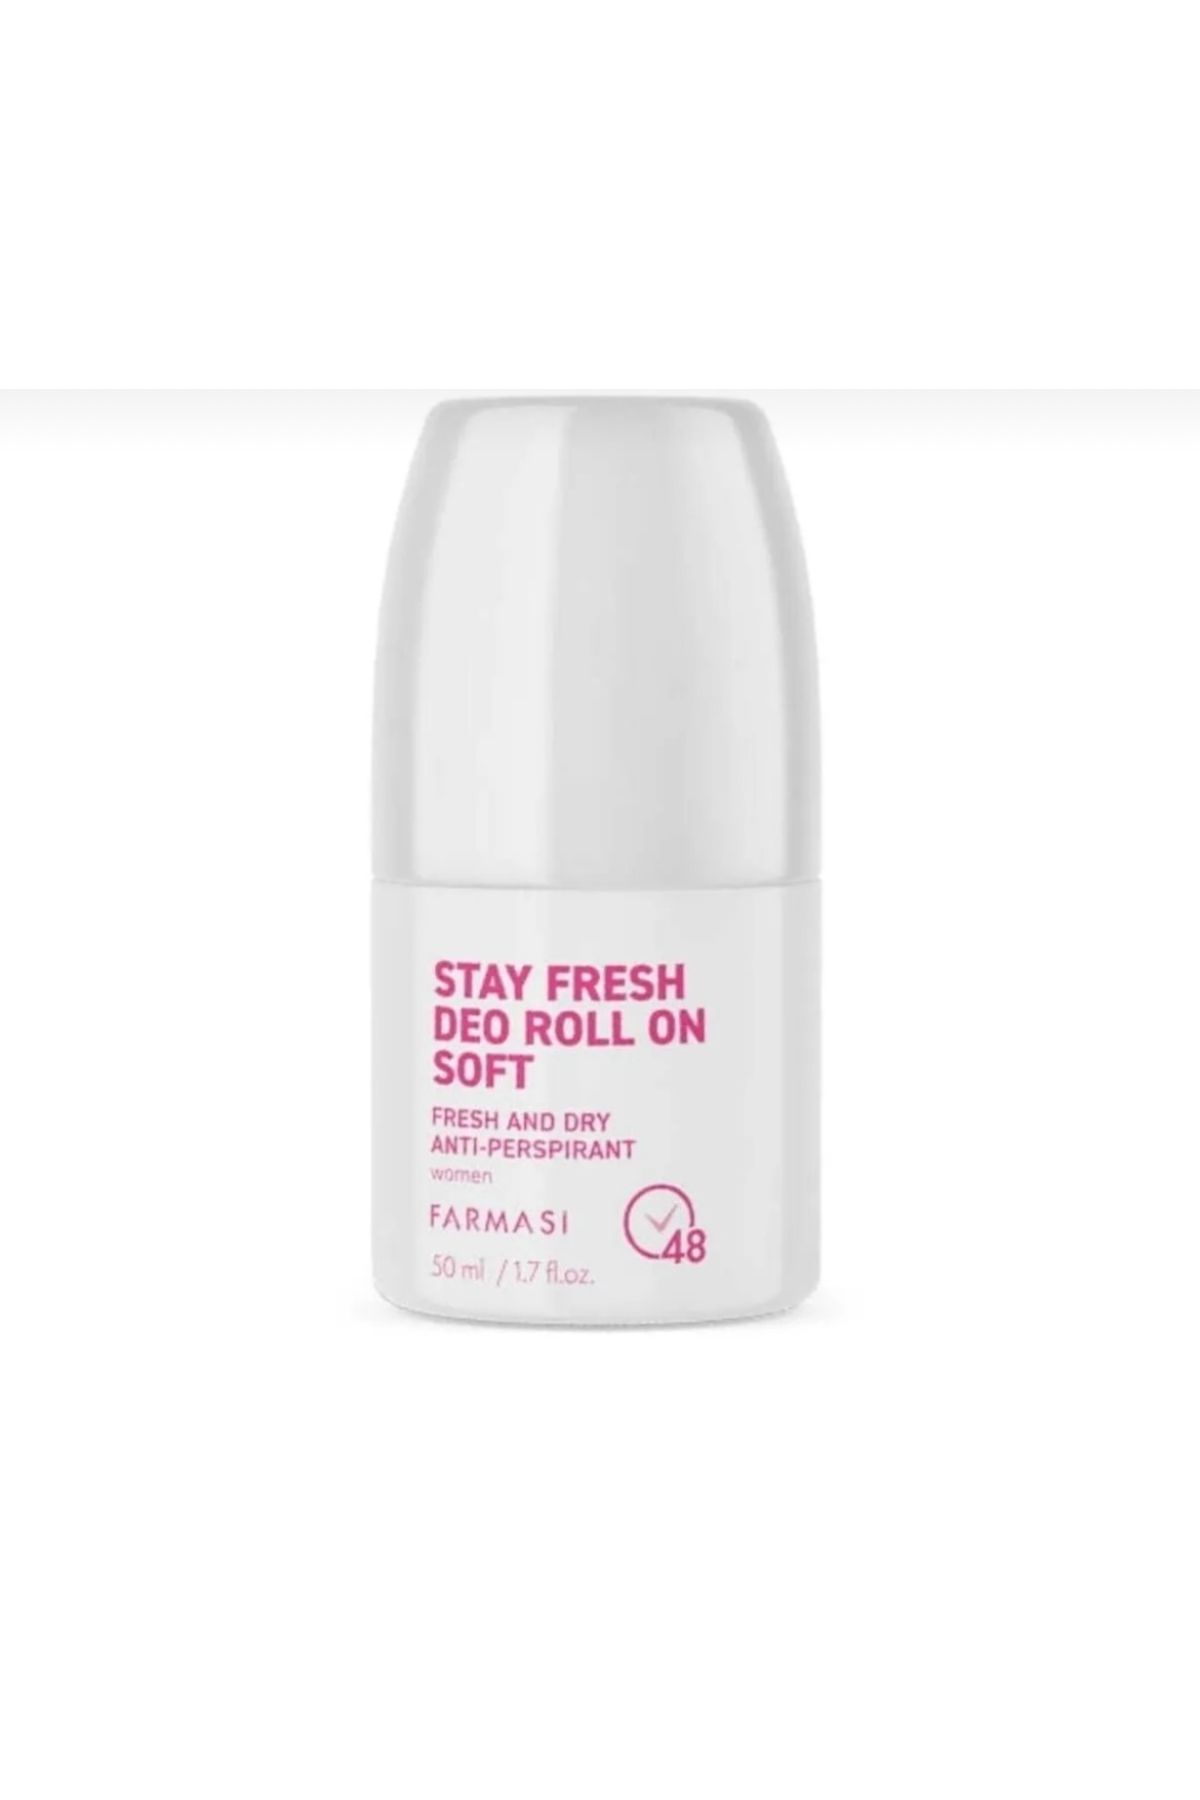 Farmasi Stay Fresh Deo Roll soft rolon 50 ml